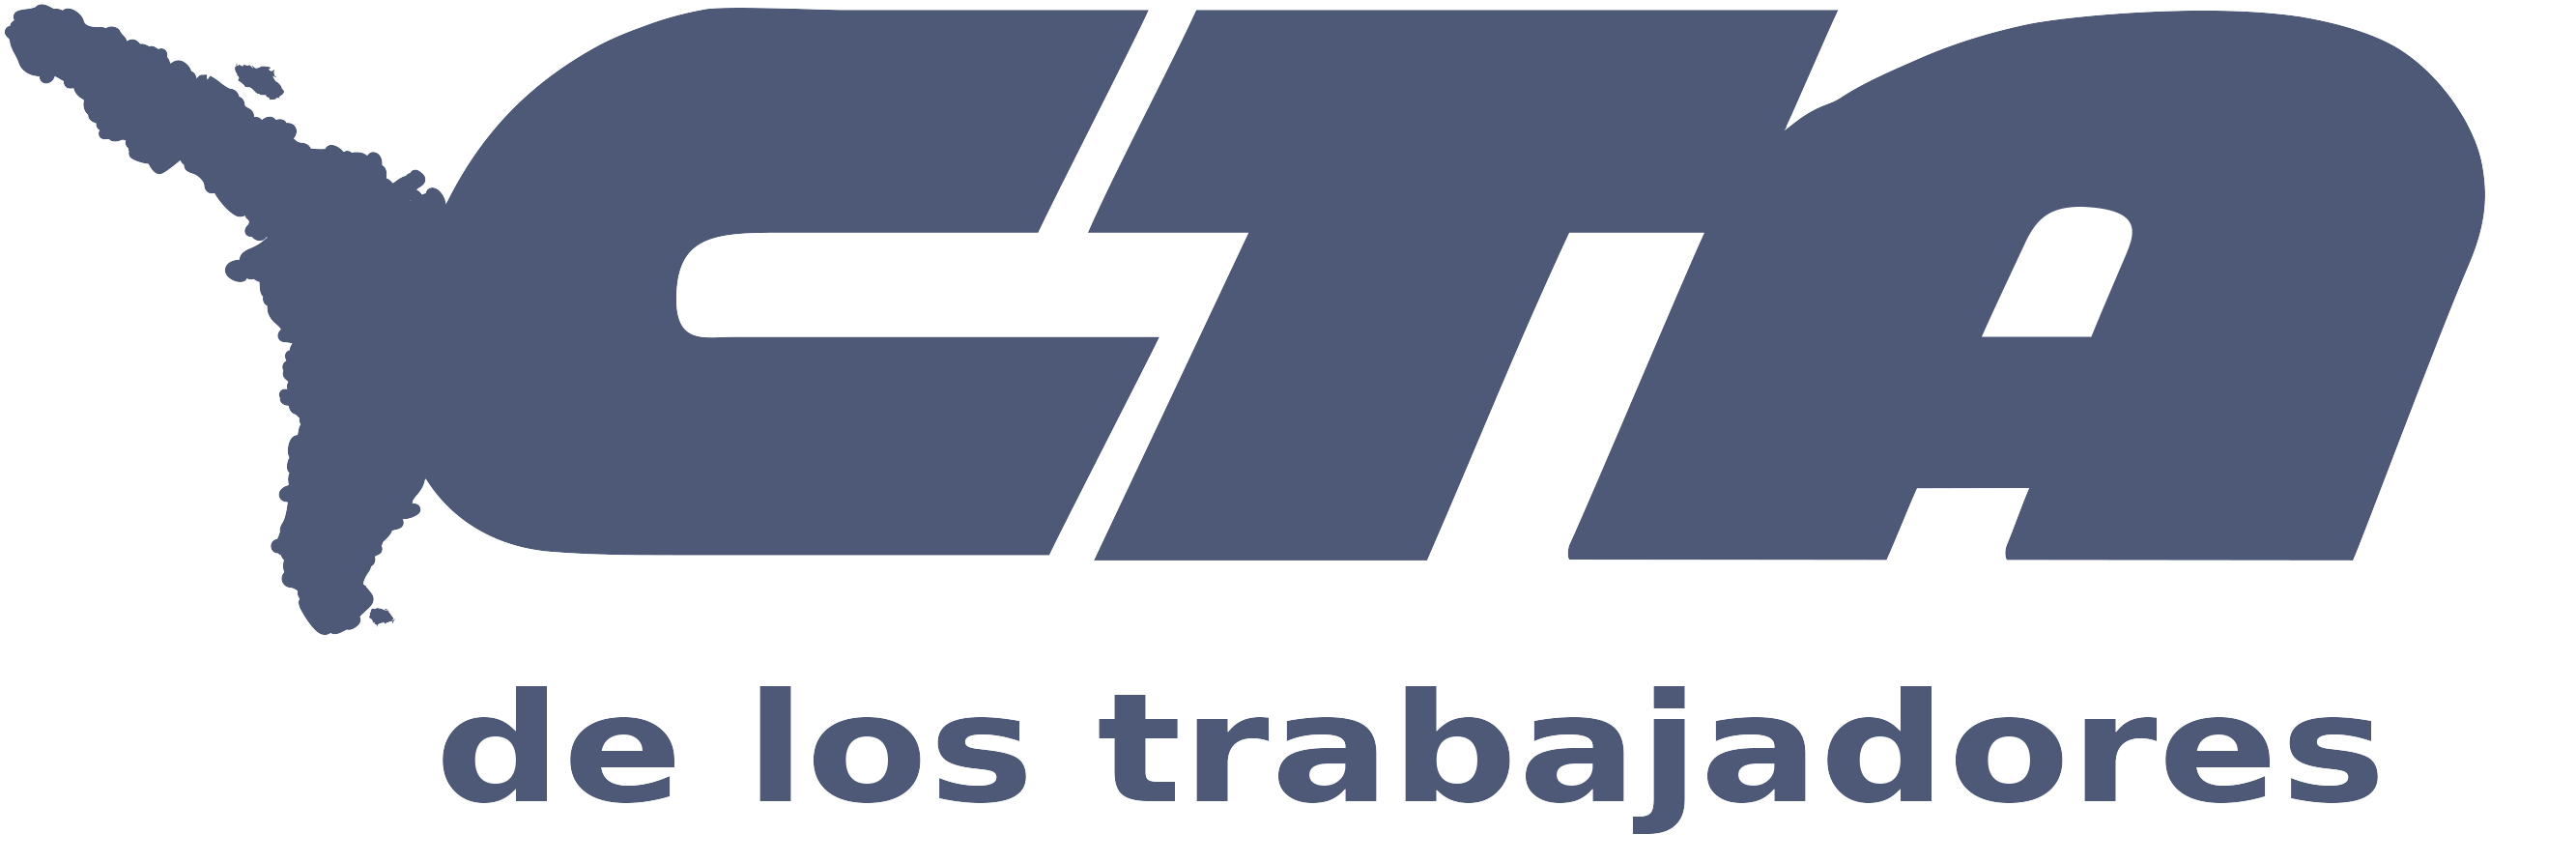 CTA - Central de Trabajadores de la Argentina